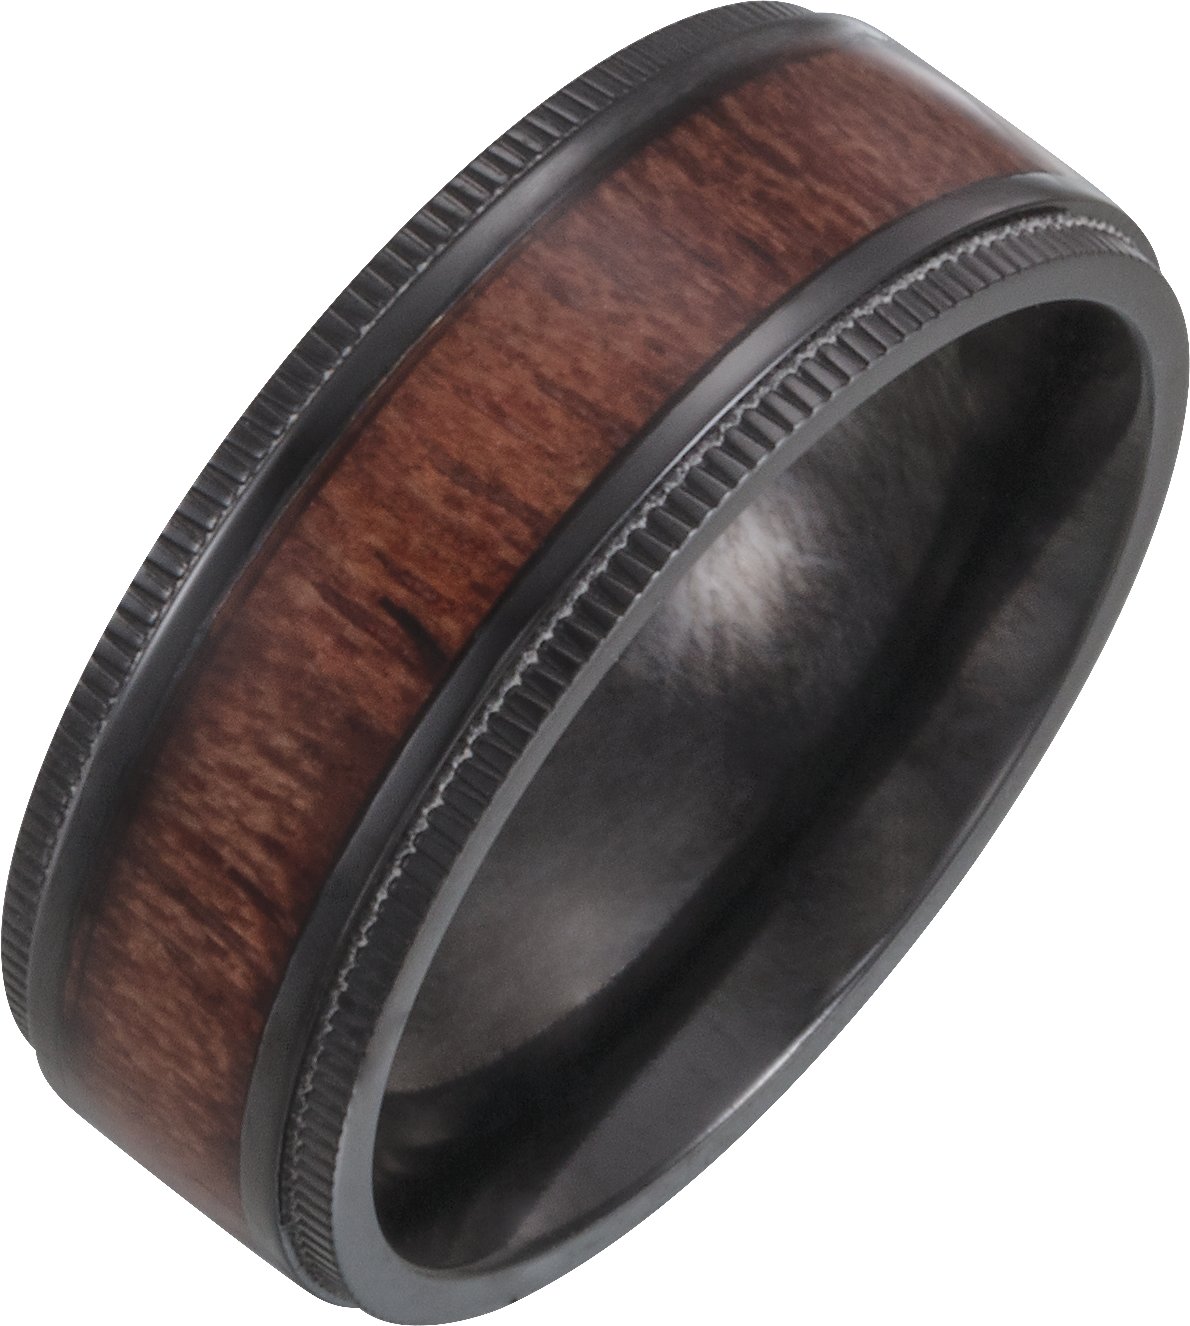 Black Titanium 8 mm Beveled-Edge Band with Wood Inlay Size 9.5